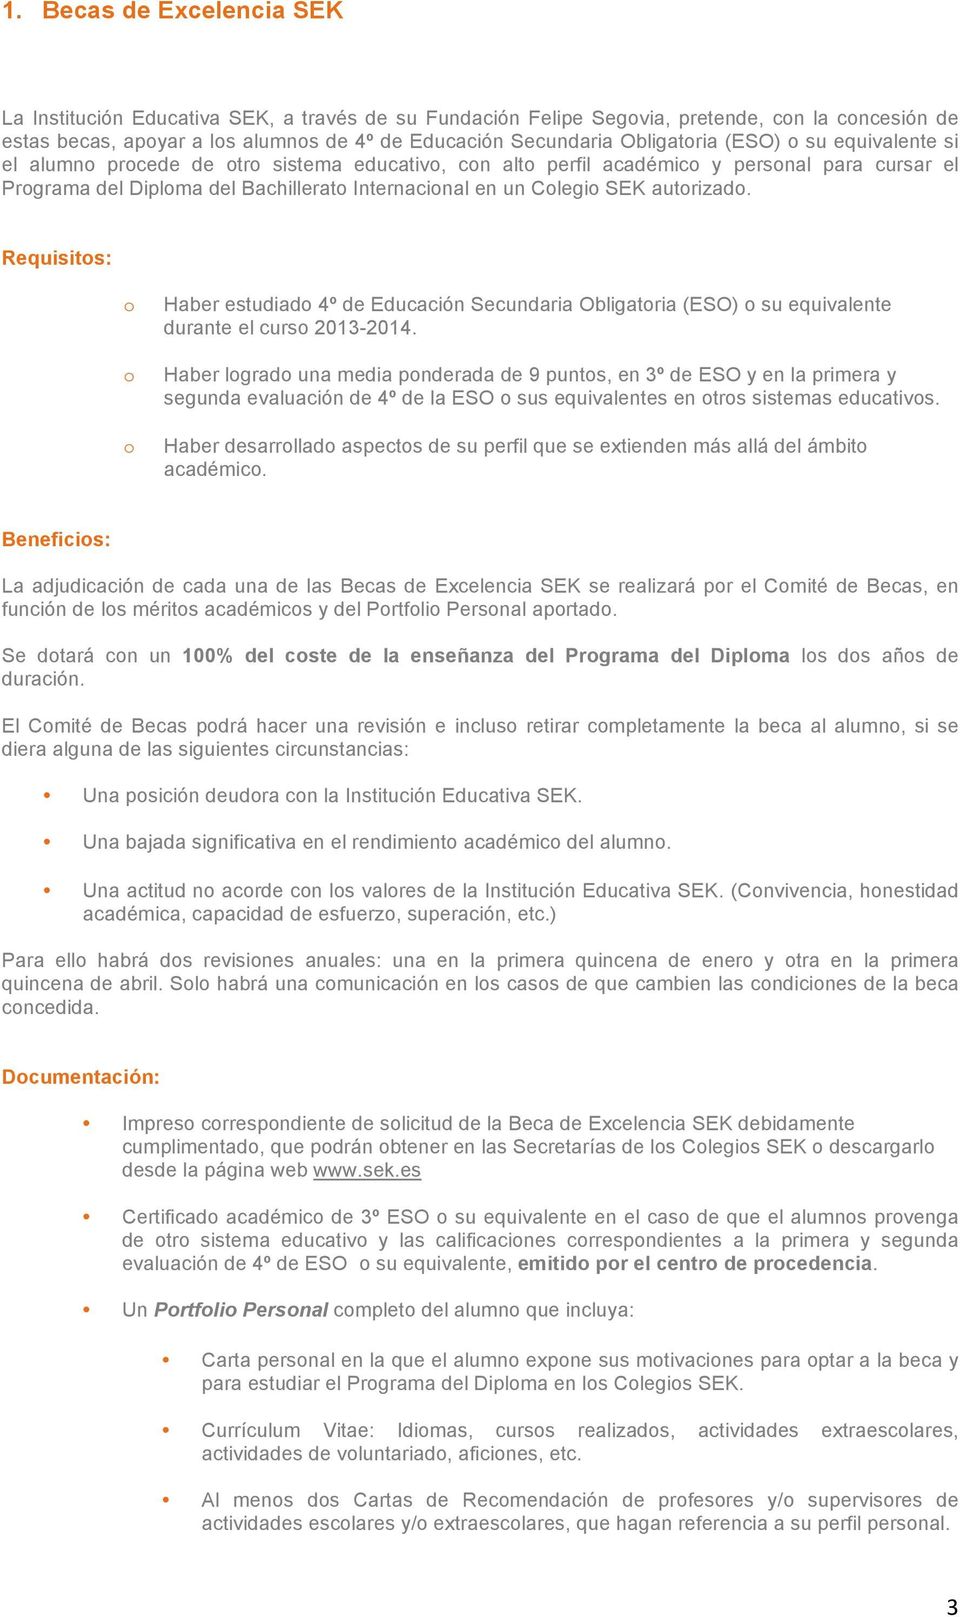 Requisits: Haber estudiad 4º de Educación Secundaria Obligatria (ESO) su equivalente durante el curs 2013-2014.